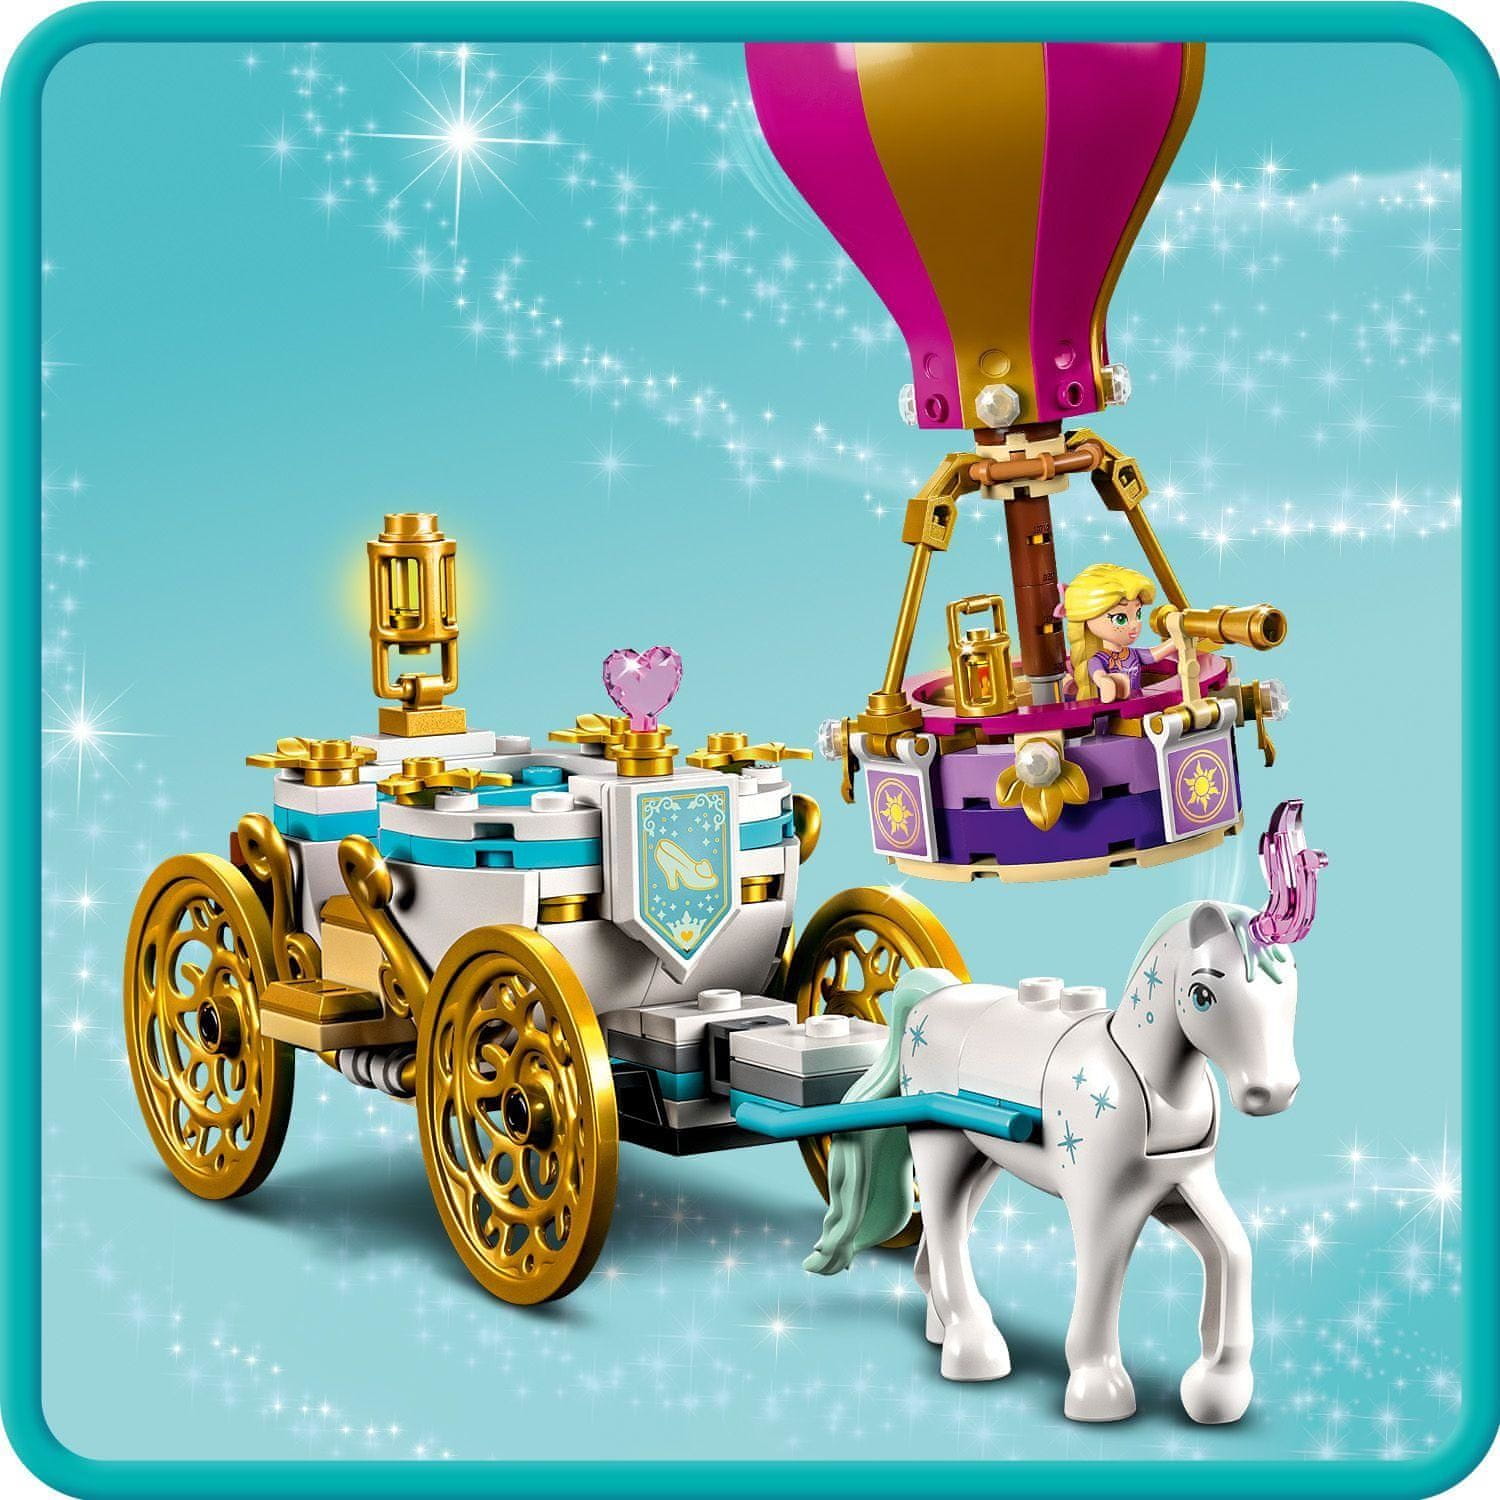 LEGO Disney Princess 43216 Kúzelný výlet s princeznami